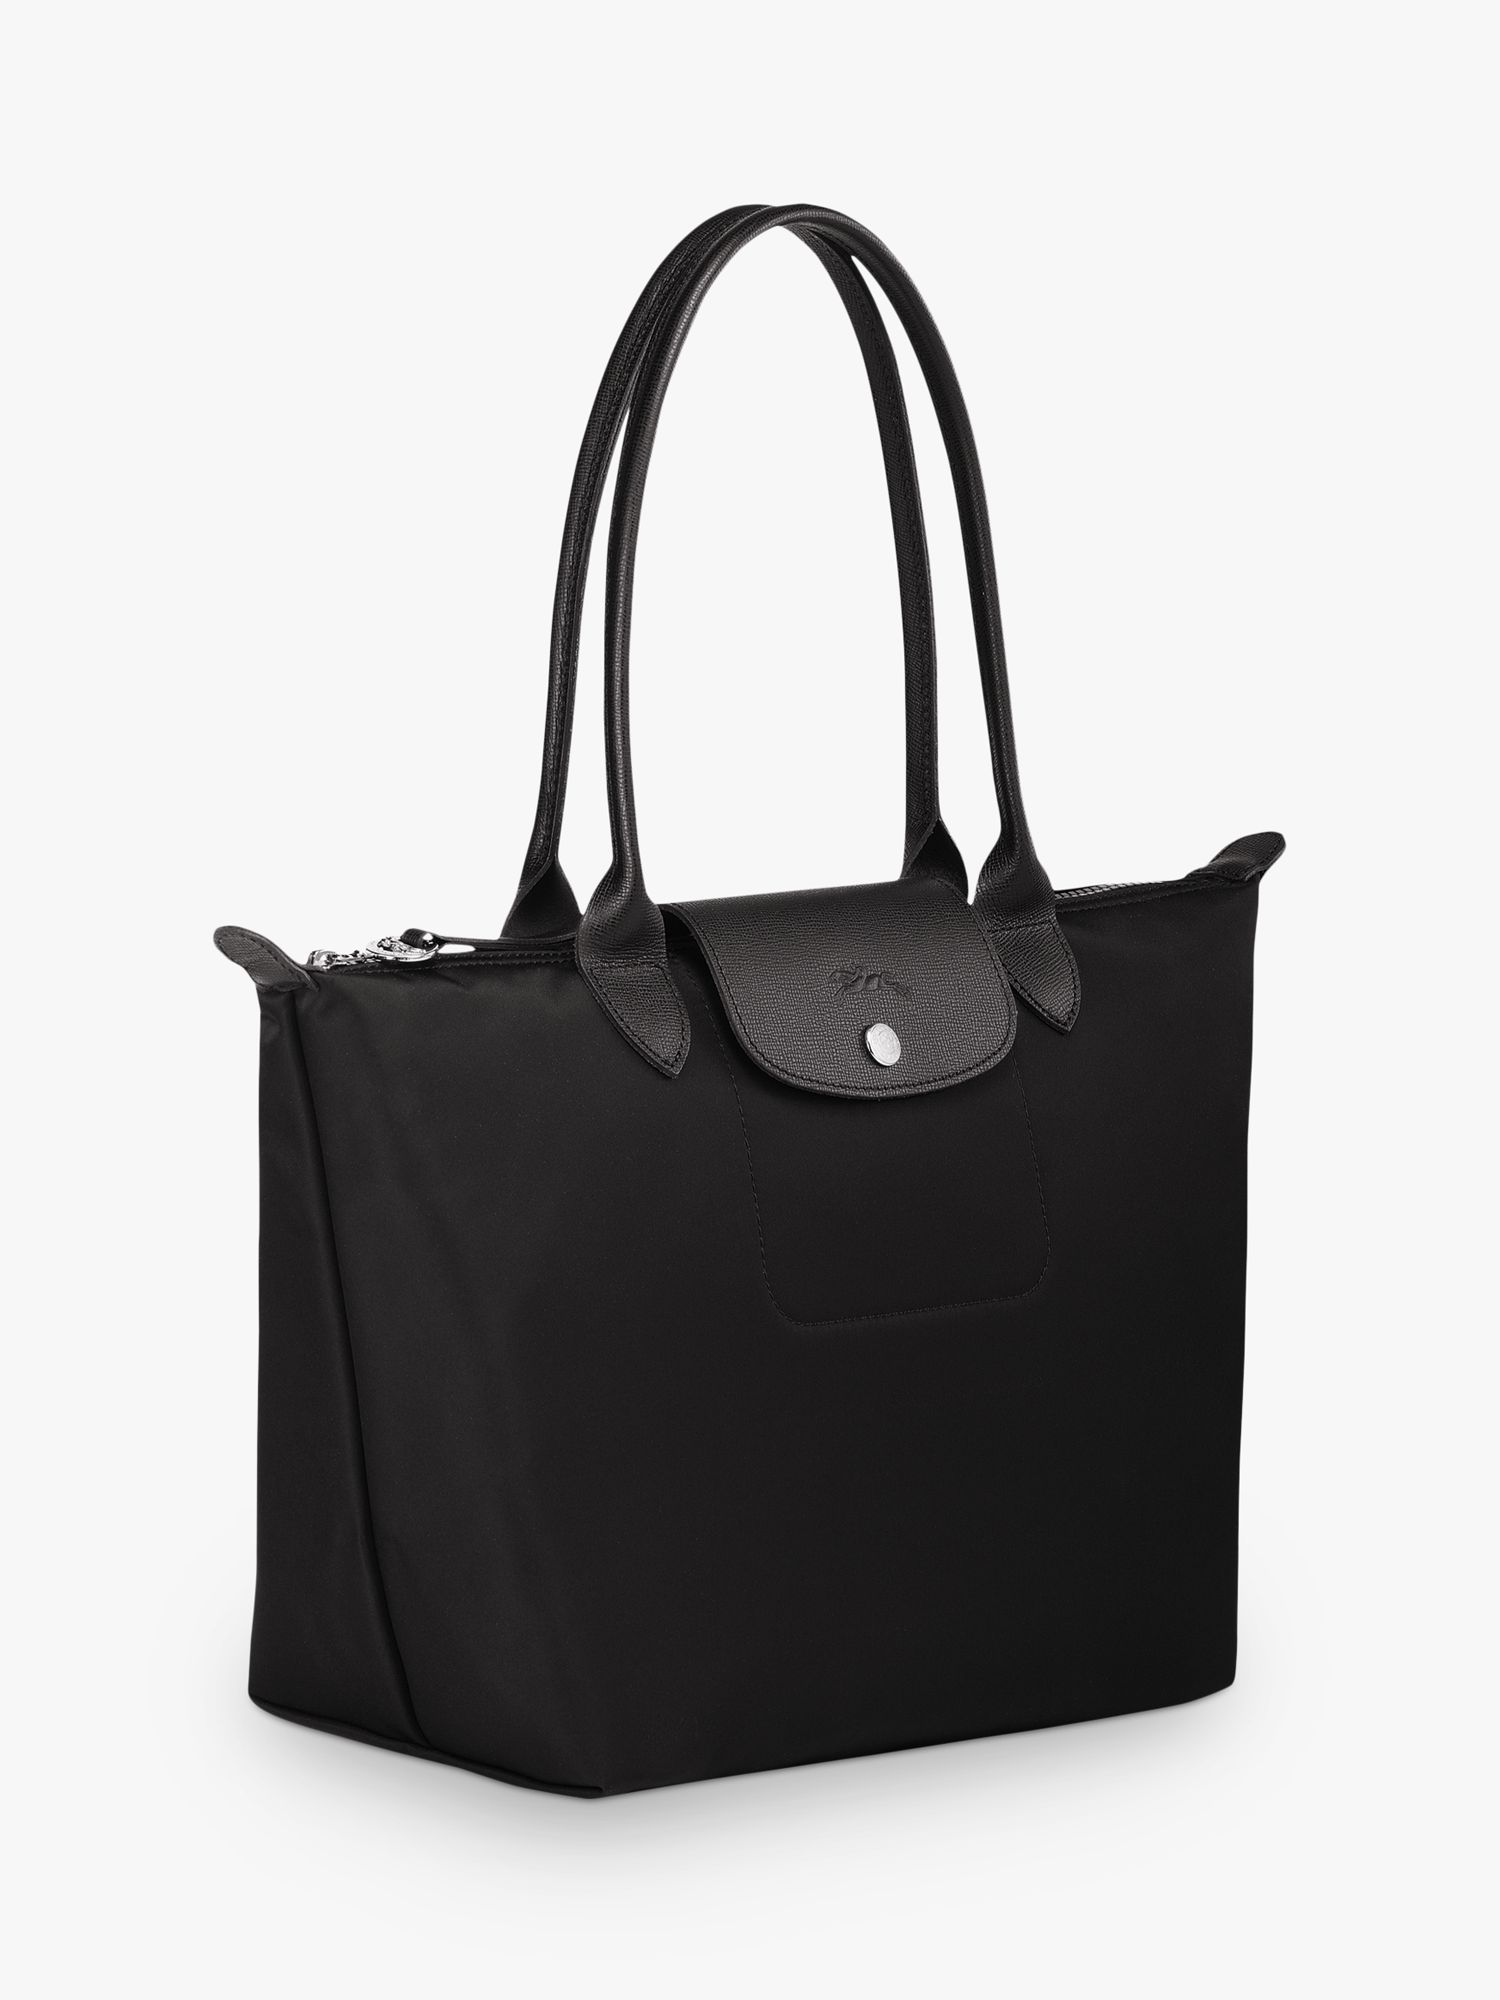 longchamp tote bag black